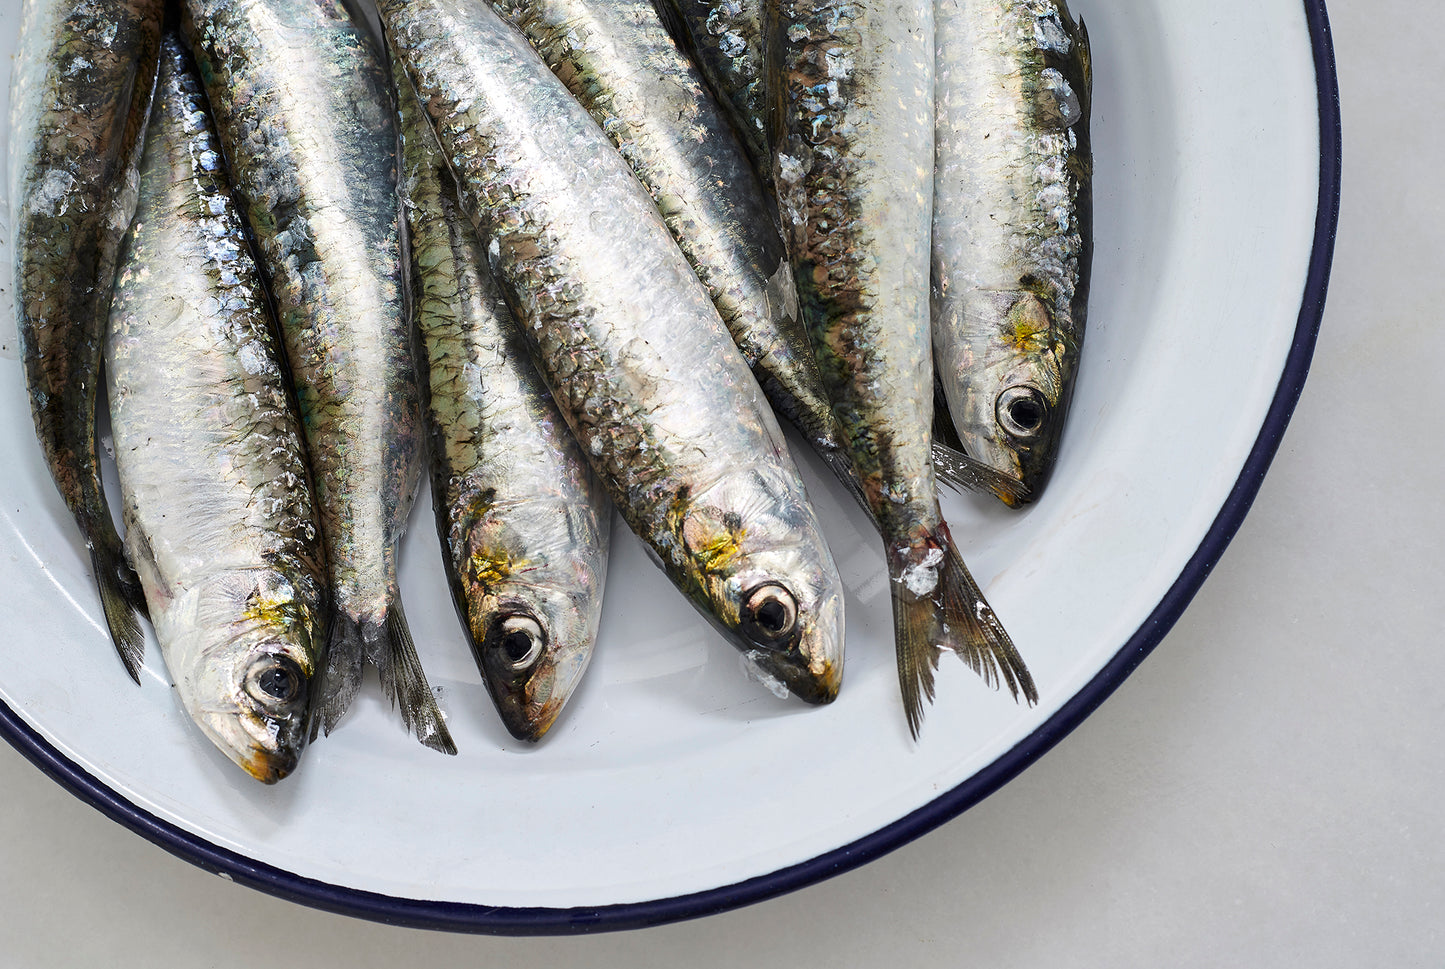 sardinas frescas a domicilio